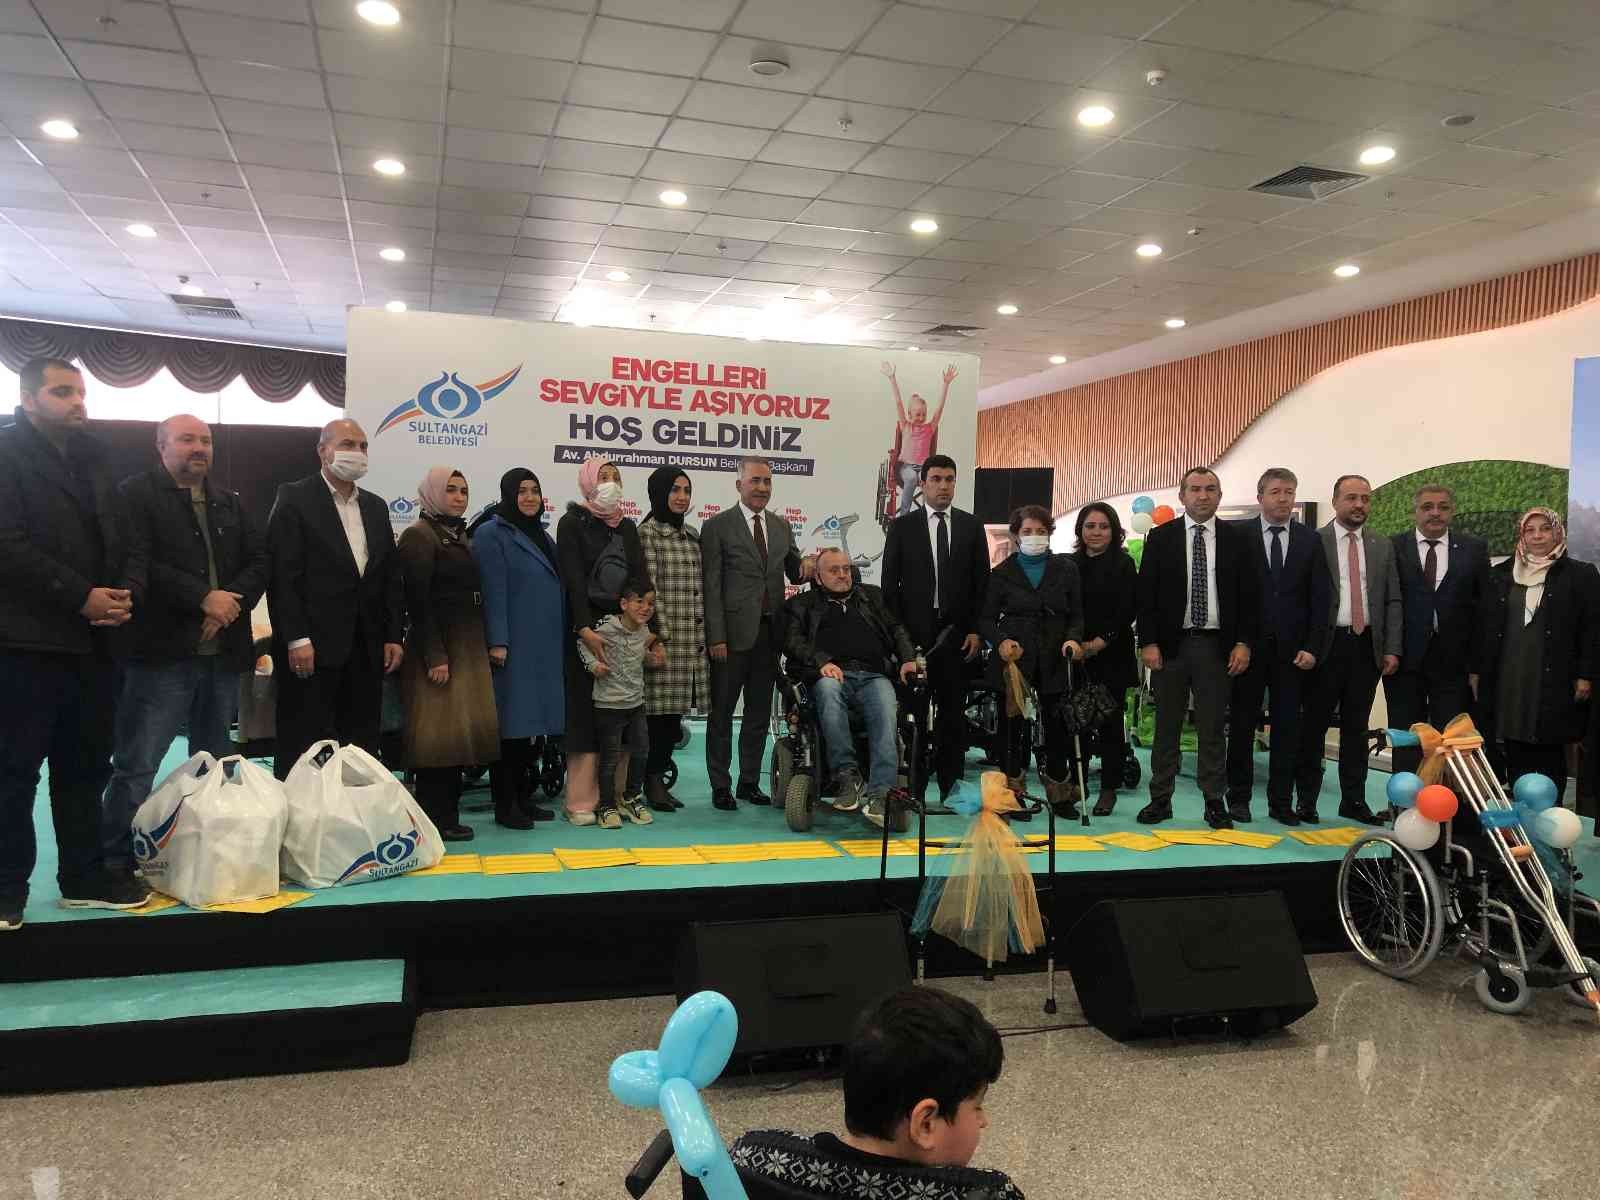 Sultangazi’de Dünya Engelliler Günü dolayısıyla etkinlik düzenlendi #istanbul